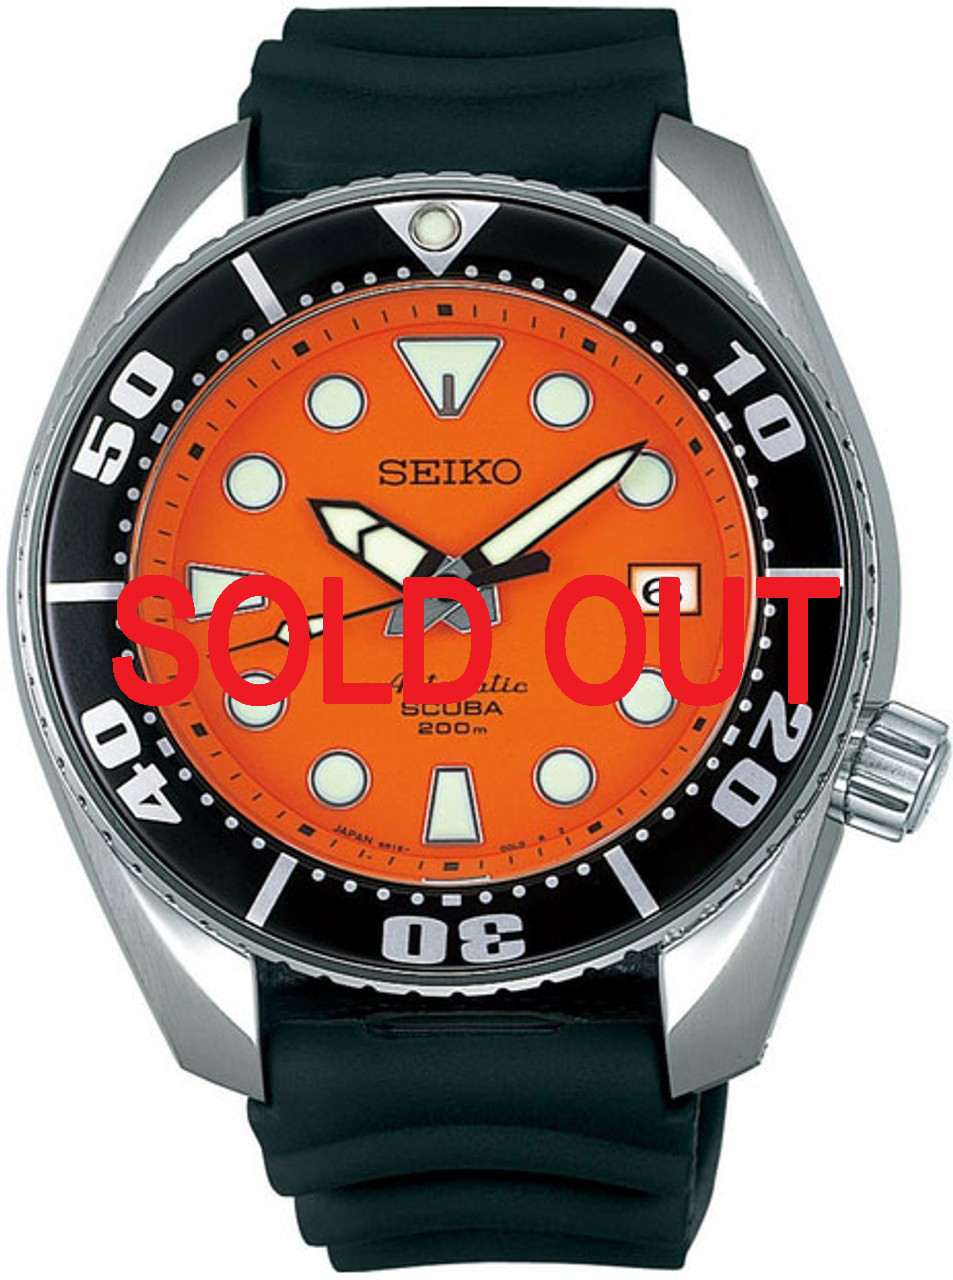 Seiko Prospex SBDC005 Diver Scuba ORANGE Sumo